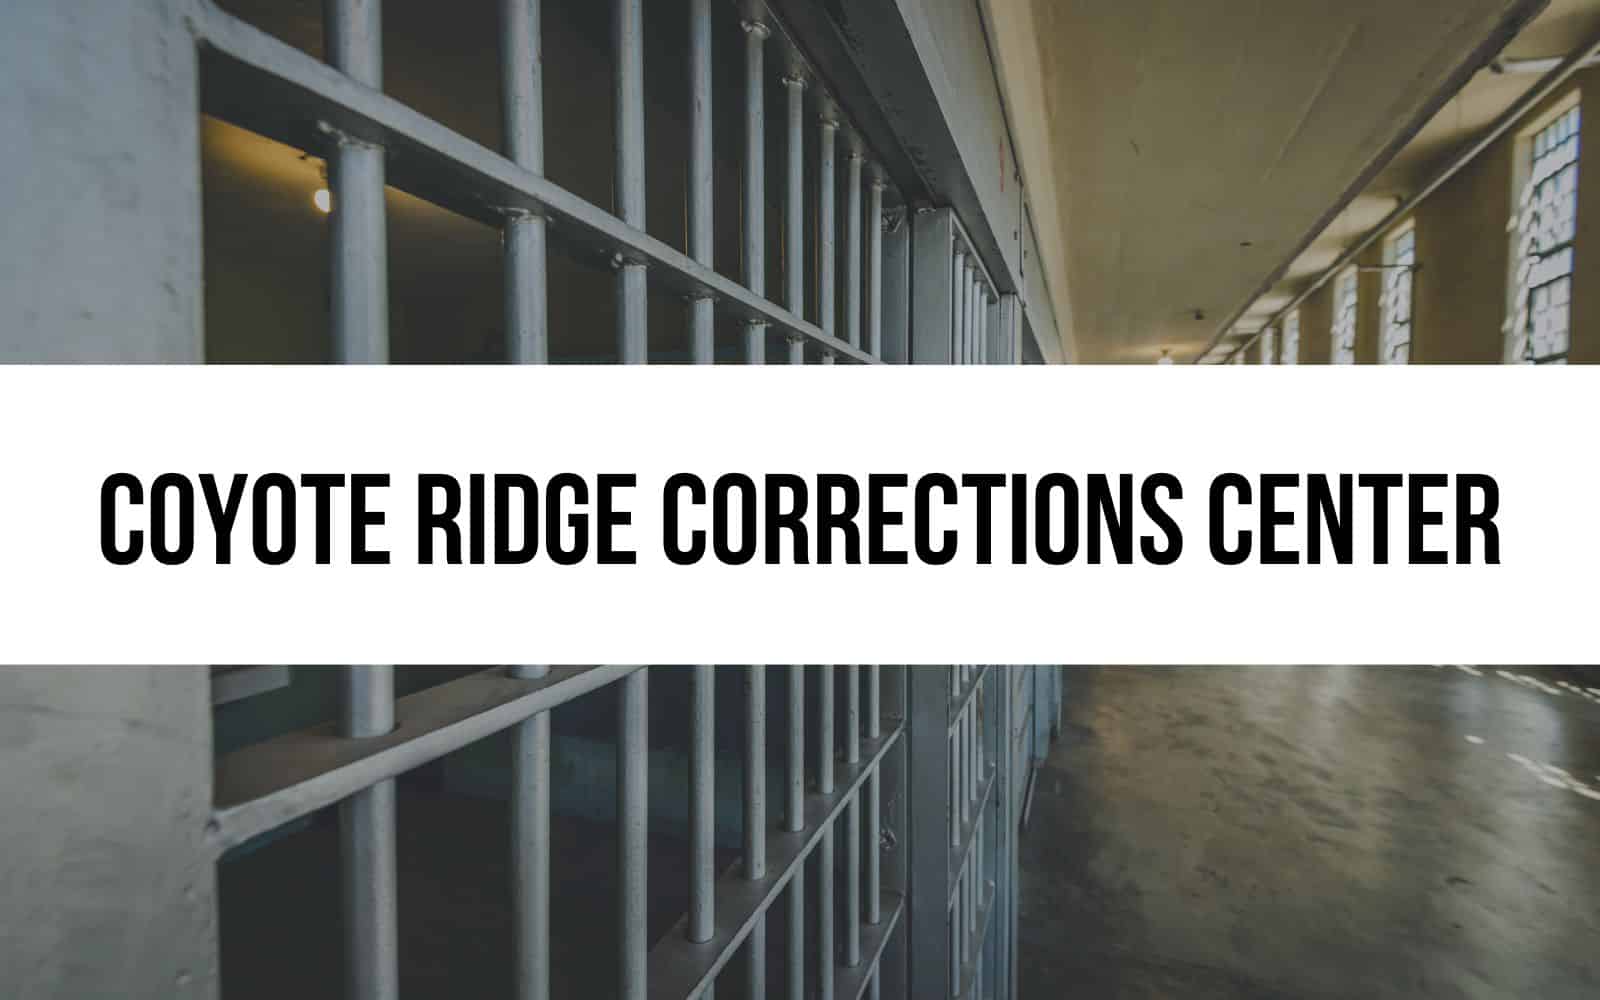 Coyote Ridge Corrections Center